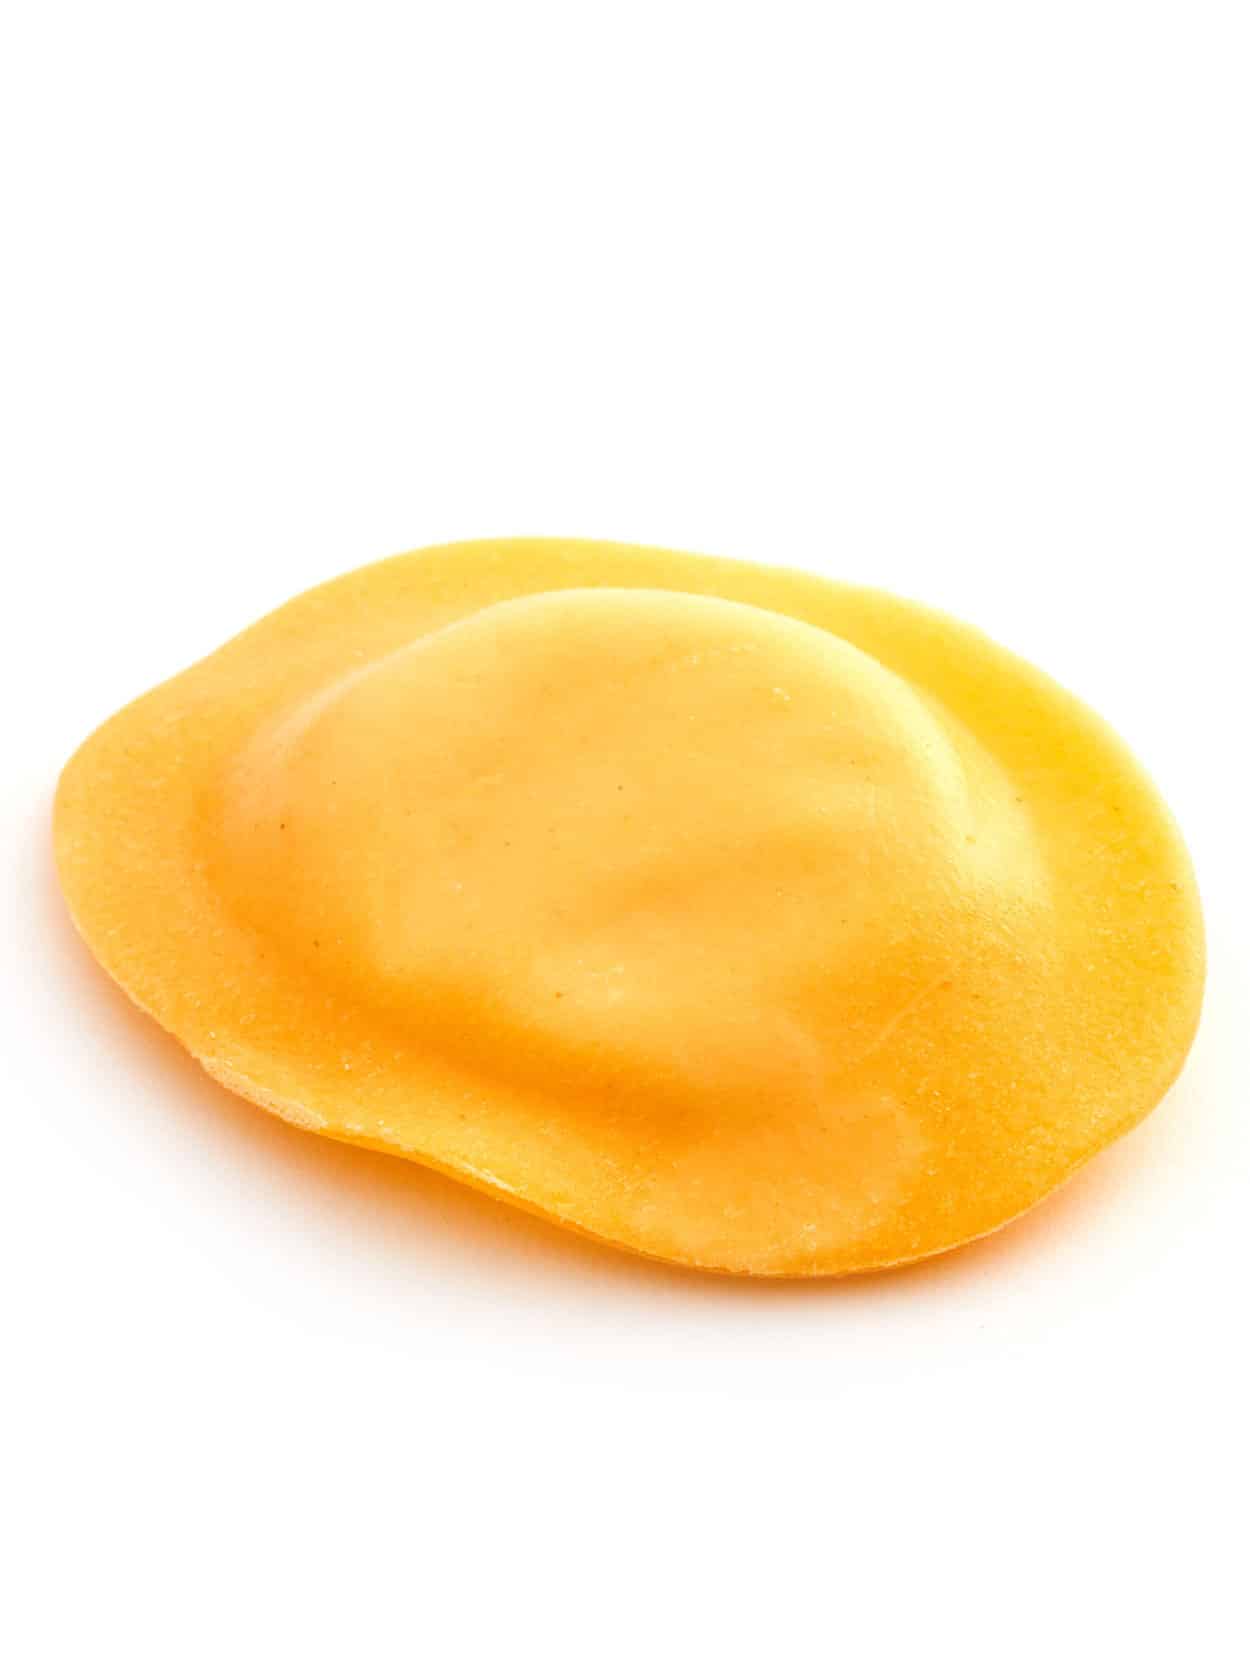 רביולי גבינות פסטה ריקו(500 גרם)